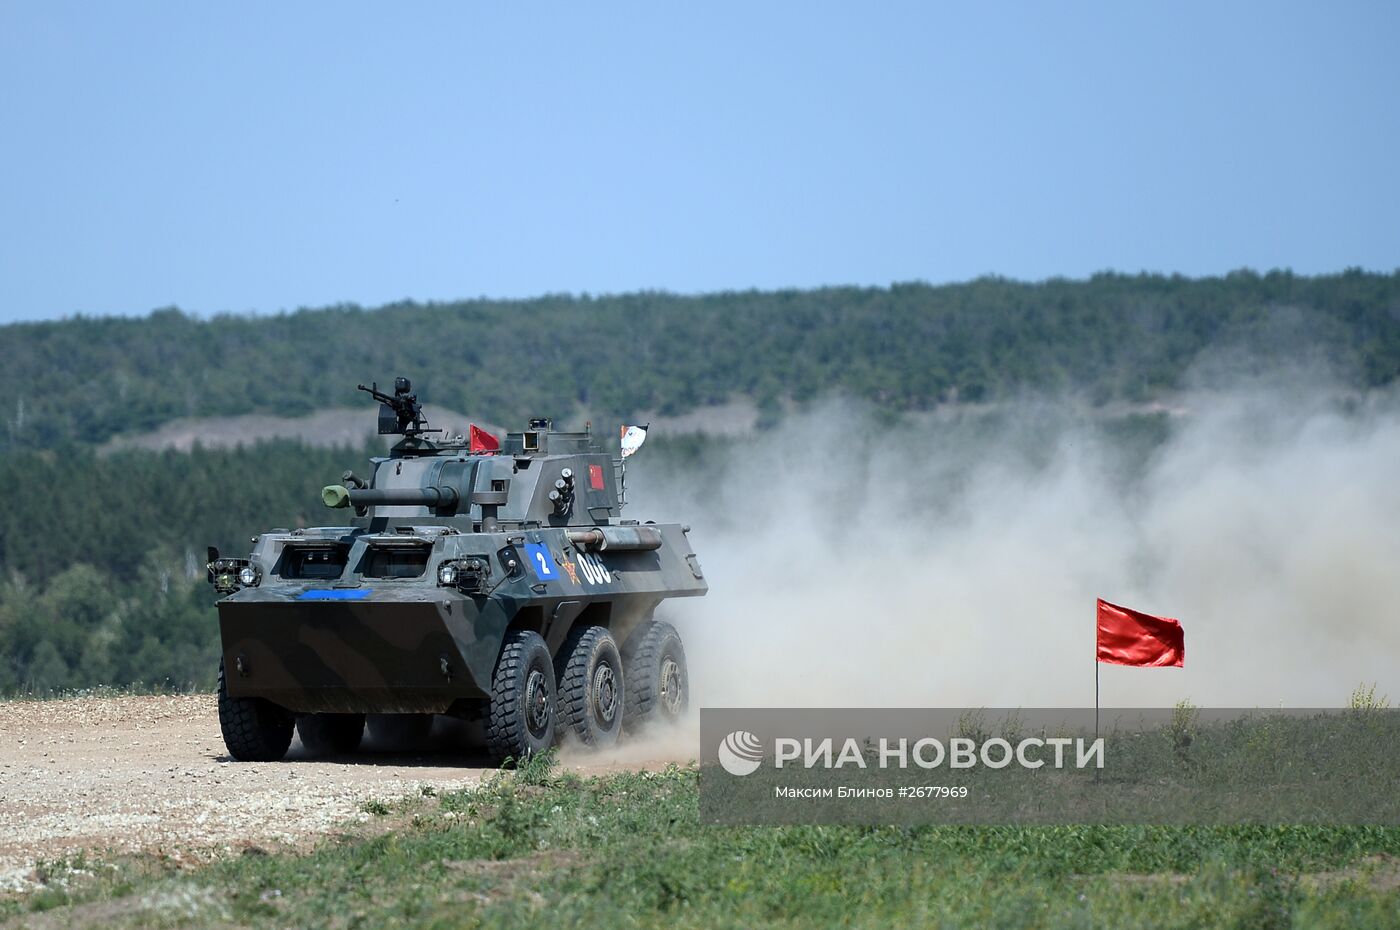 Соревнования артиллеристов "Мастера артиллерийского огня" в Саратовской области